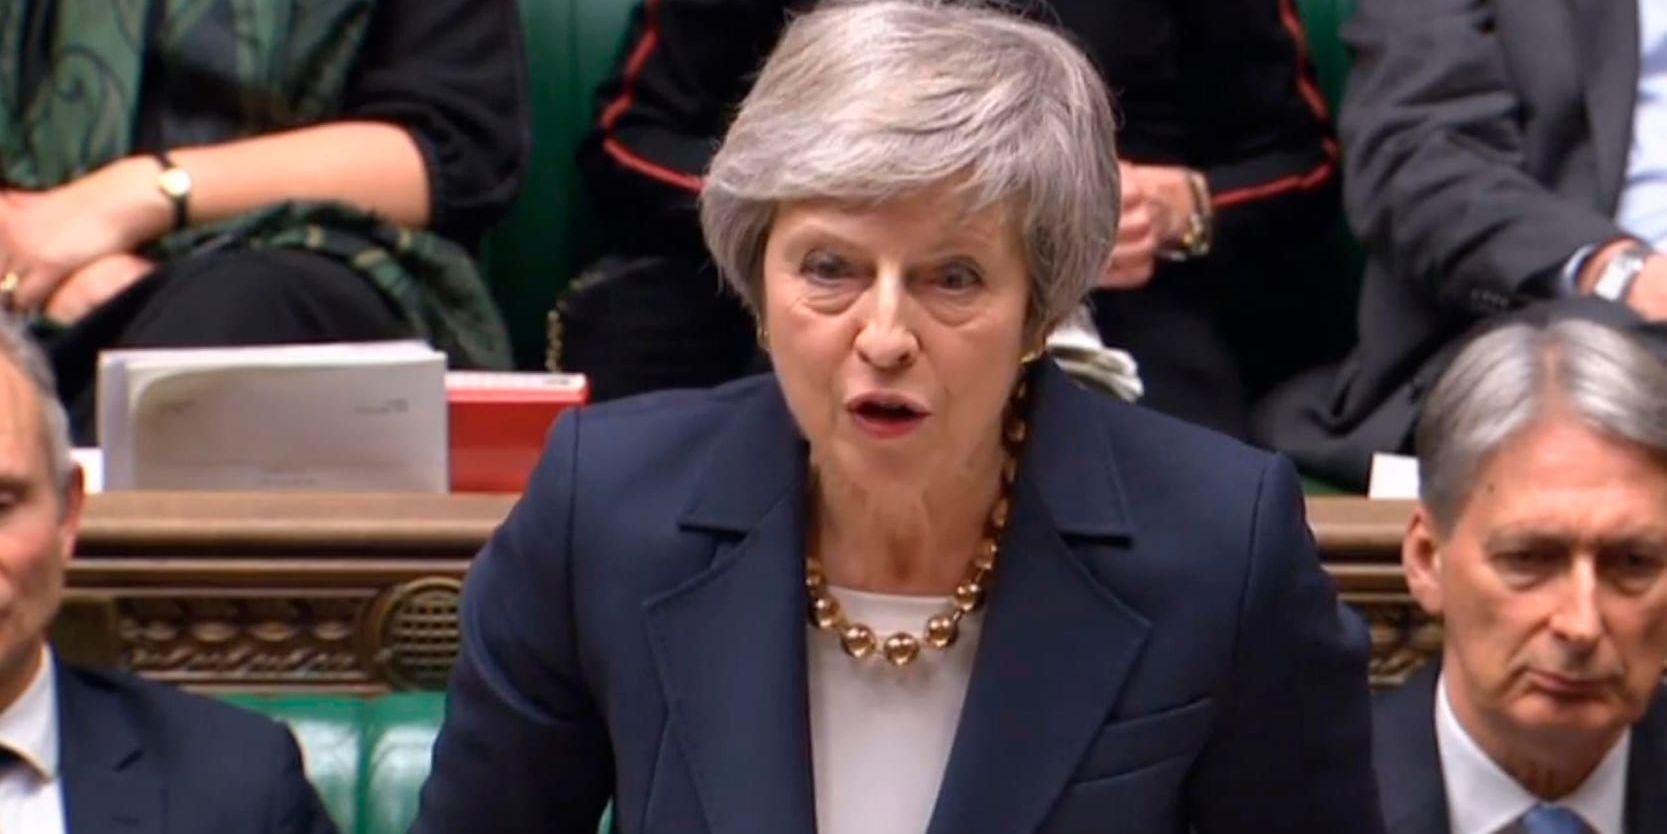 Storbritanniens premiärminister Theresa May väntas skjuta upp parlamentsomröstning om brittiskt utträdesavtal med EU. Arkivbild